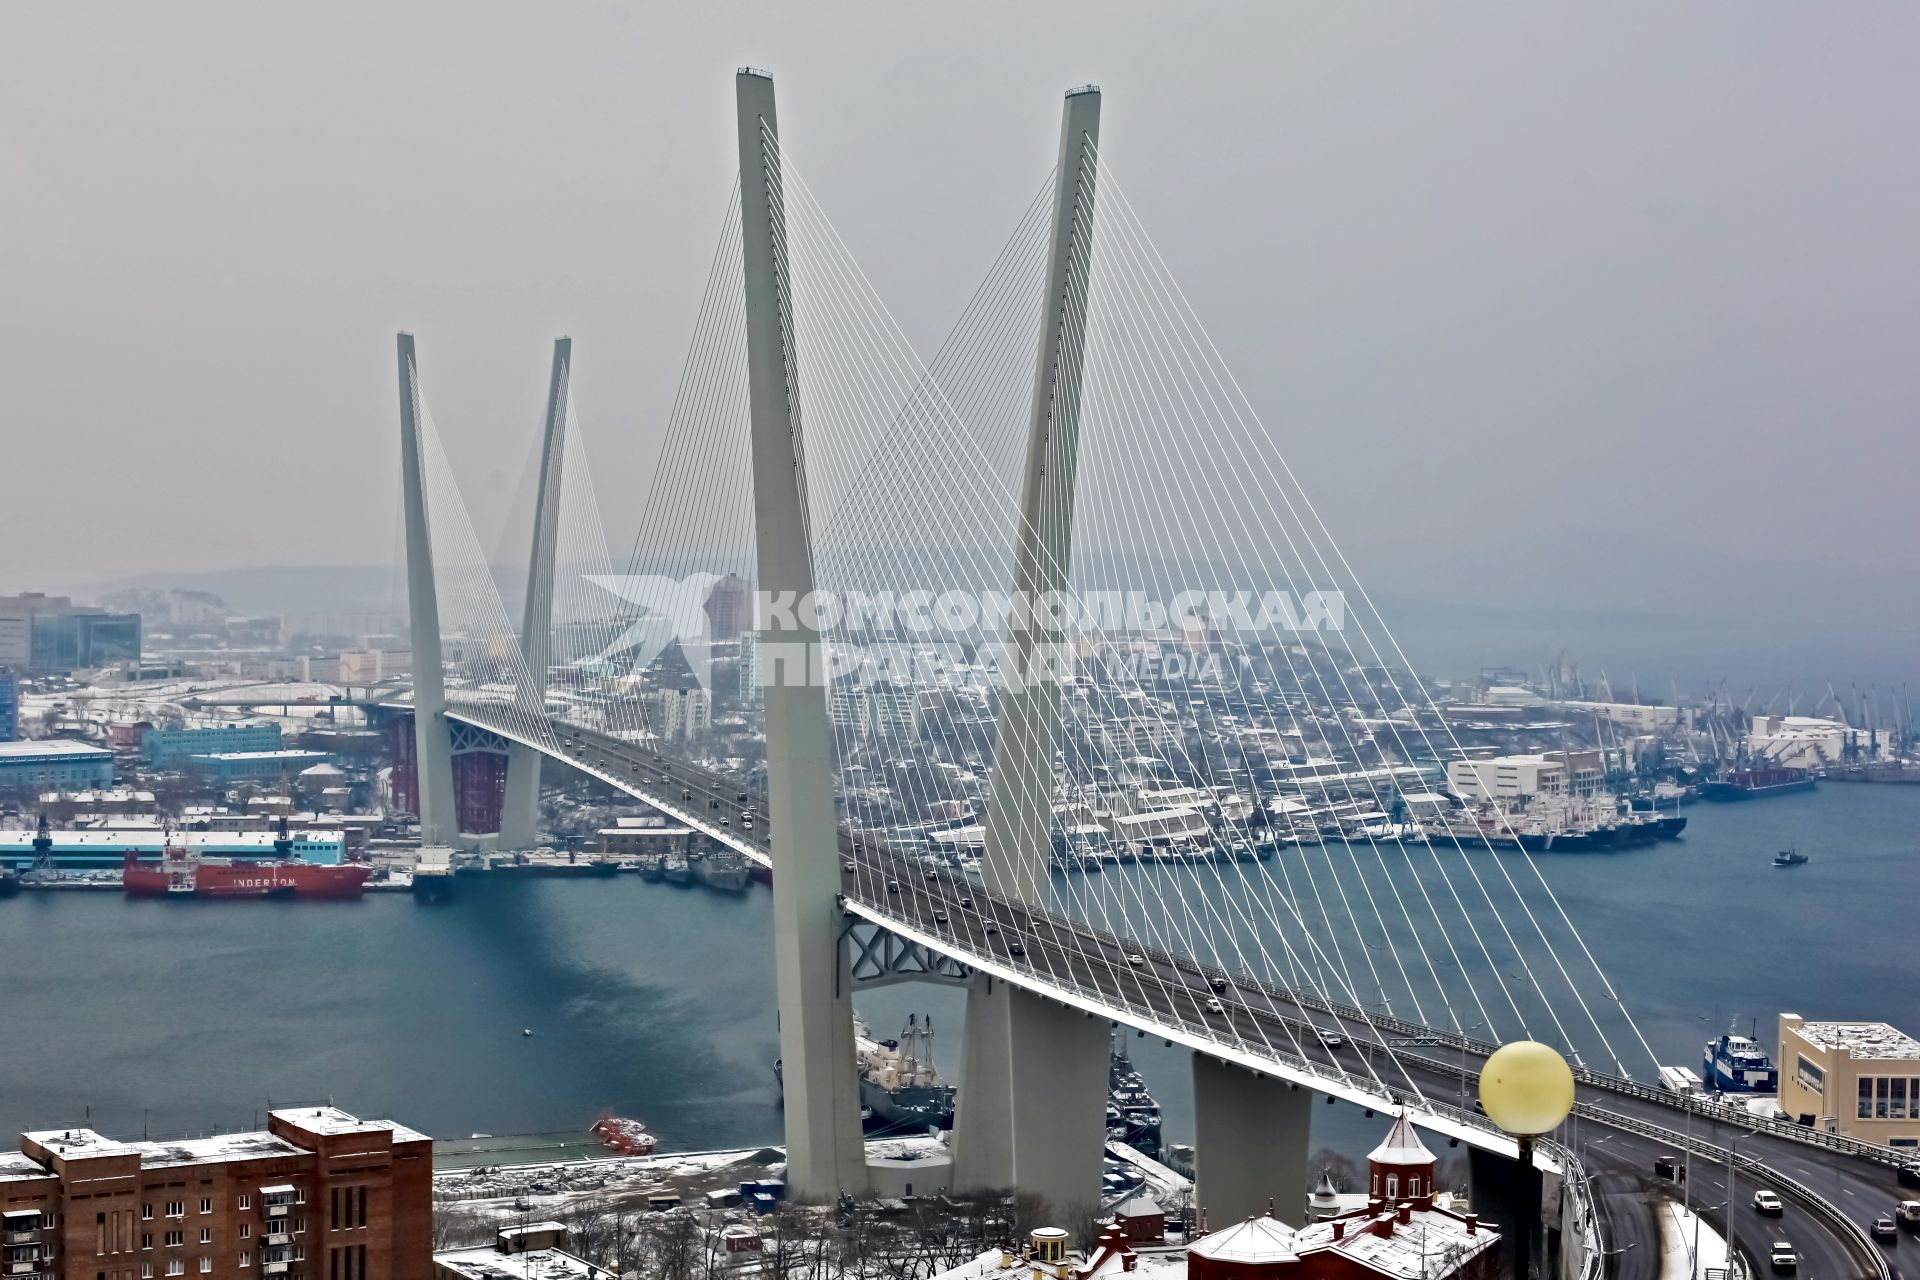 Золотой мост - вантовый мост через бухту Золотой Рог во Владивостоке.